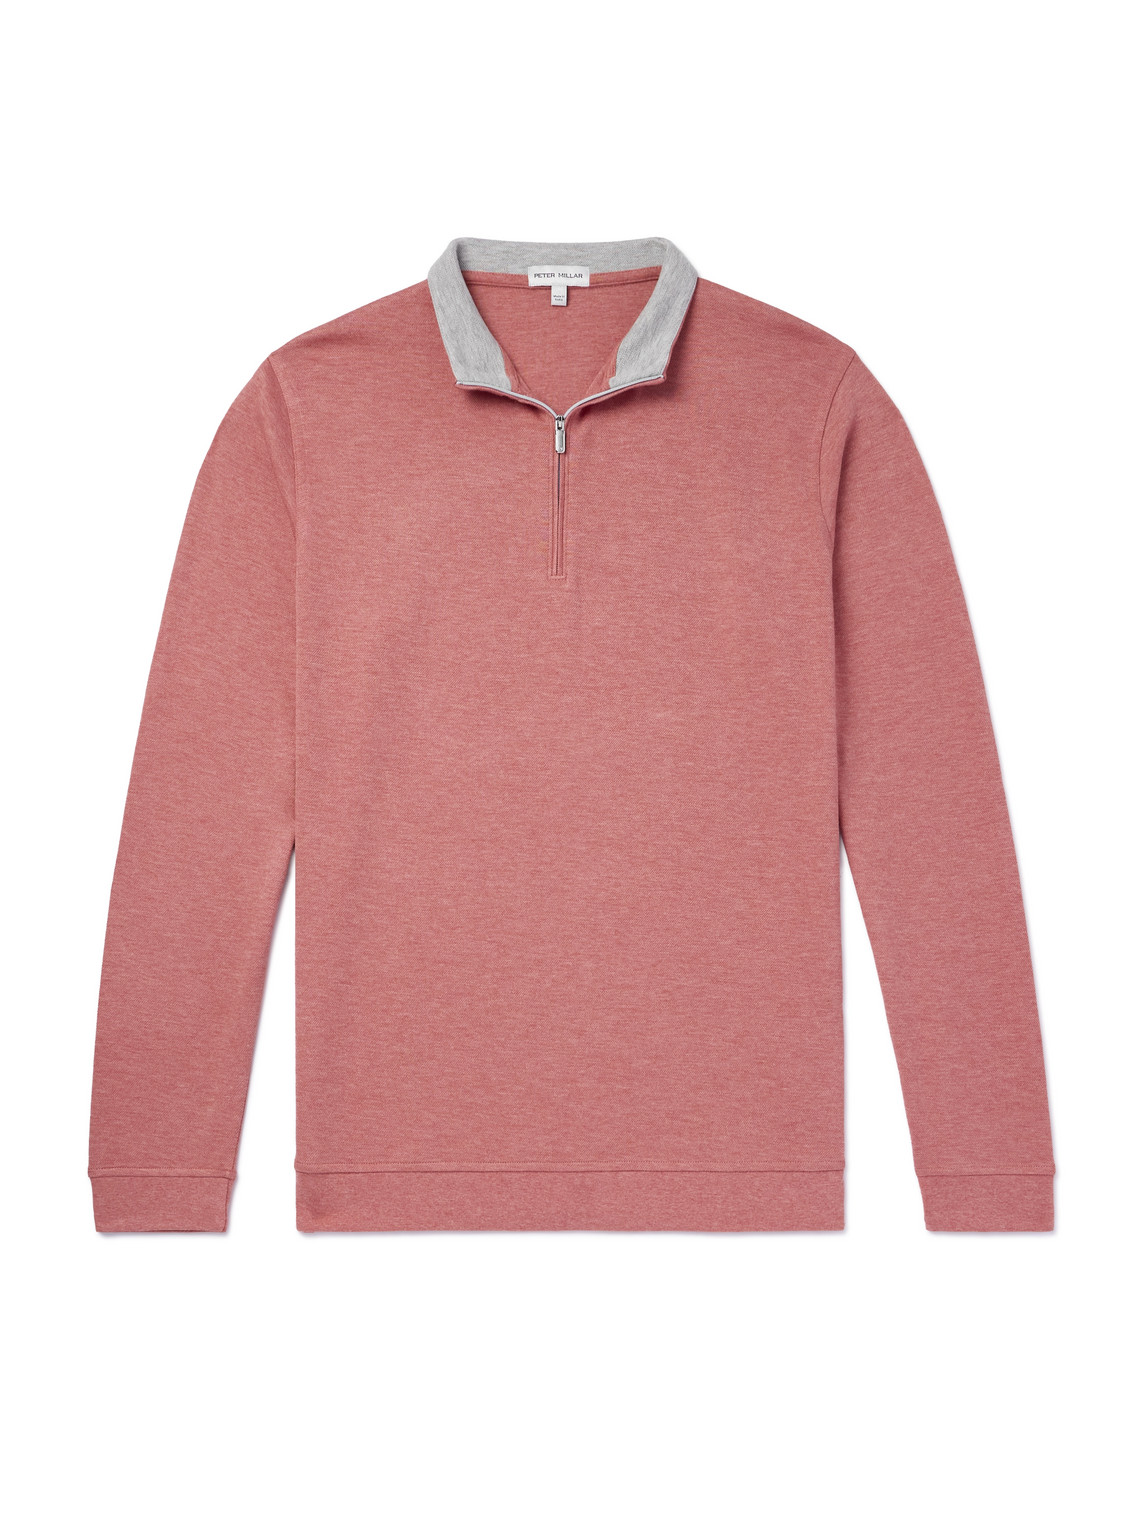 Crown Comfort Cotton-Blend Half-Zip Sweater